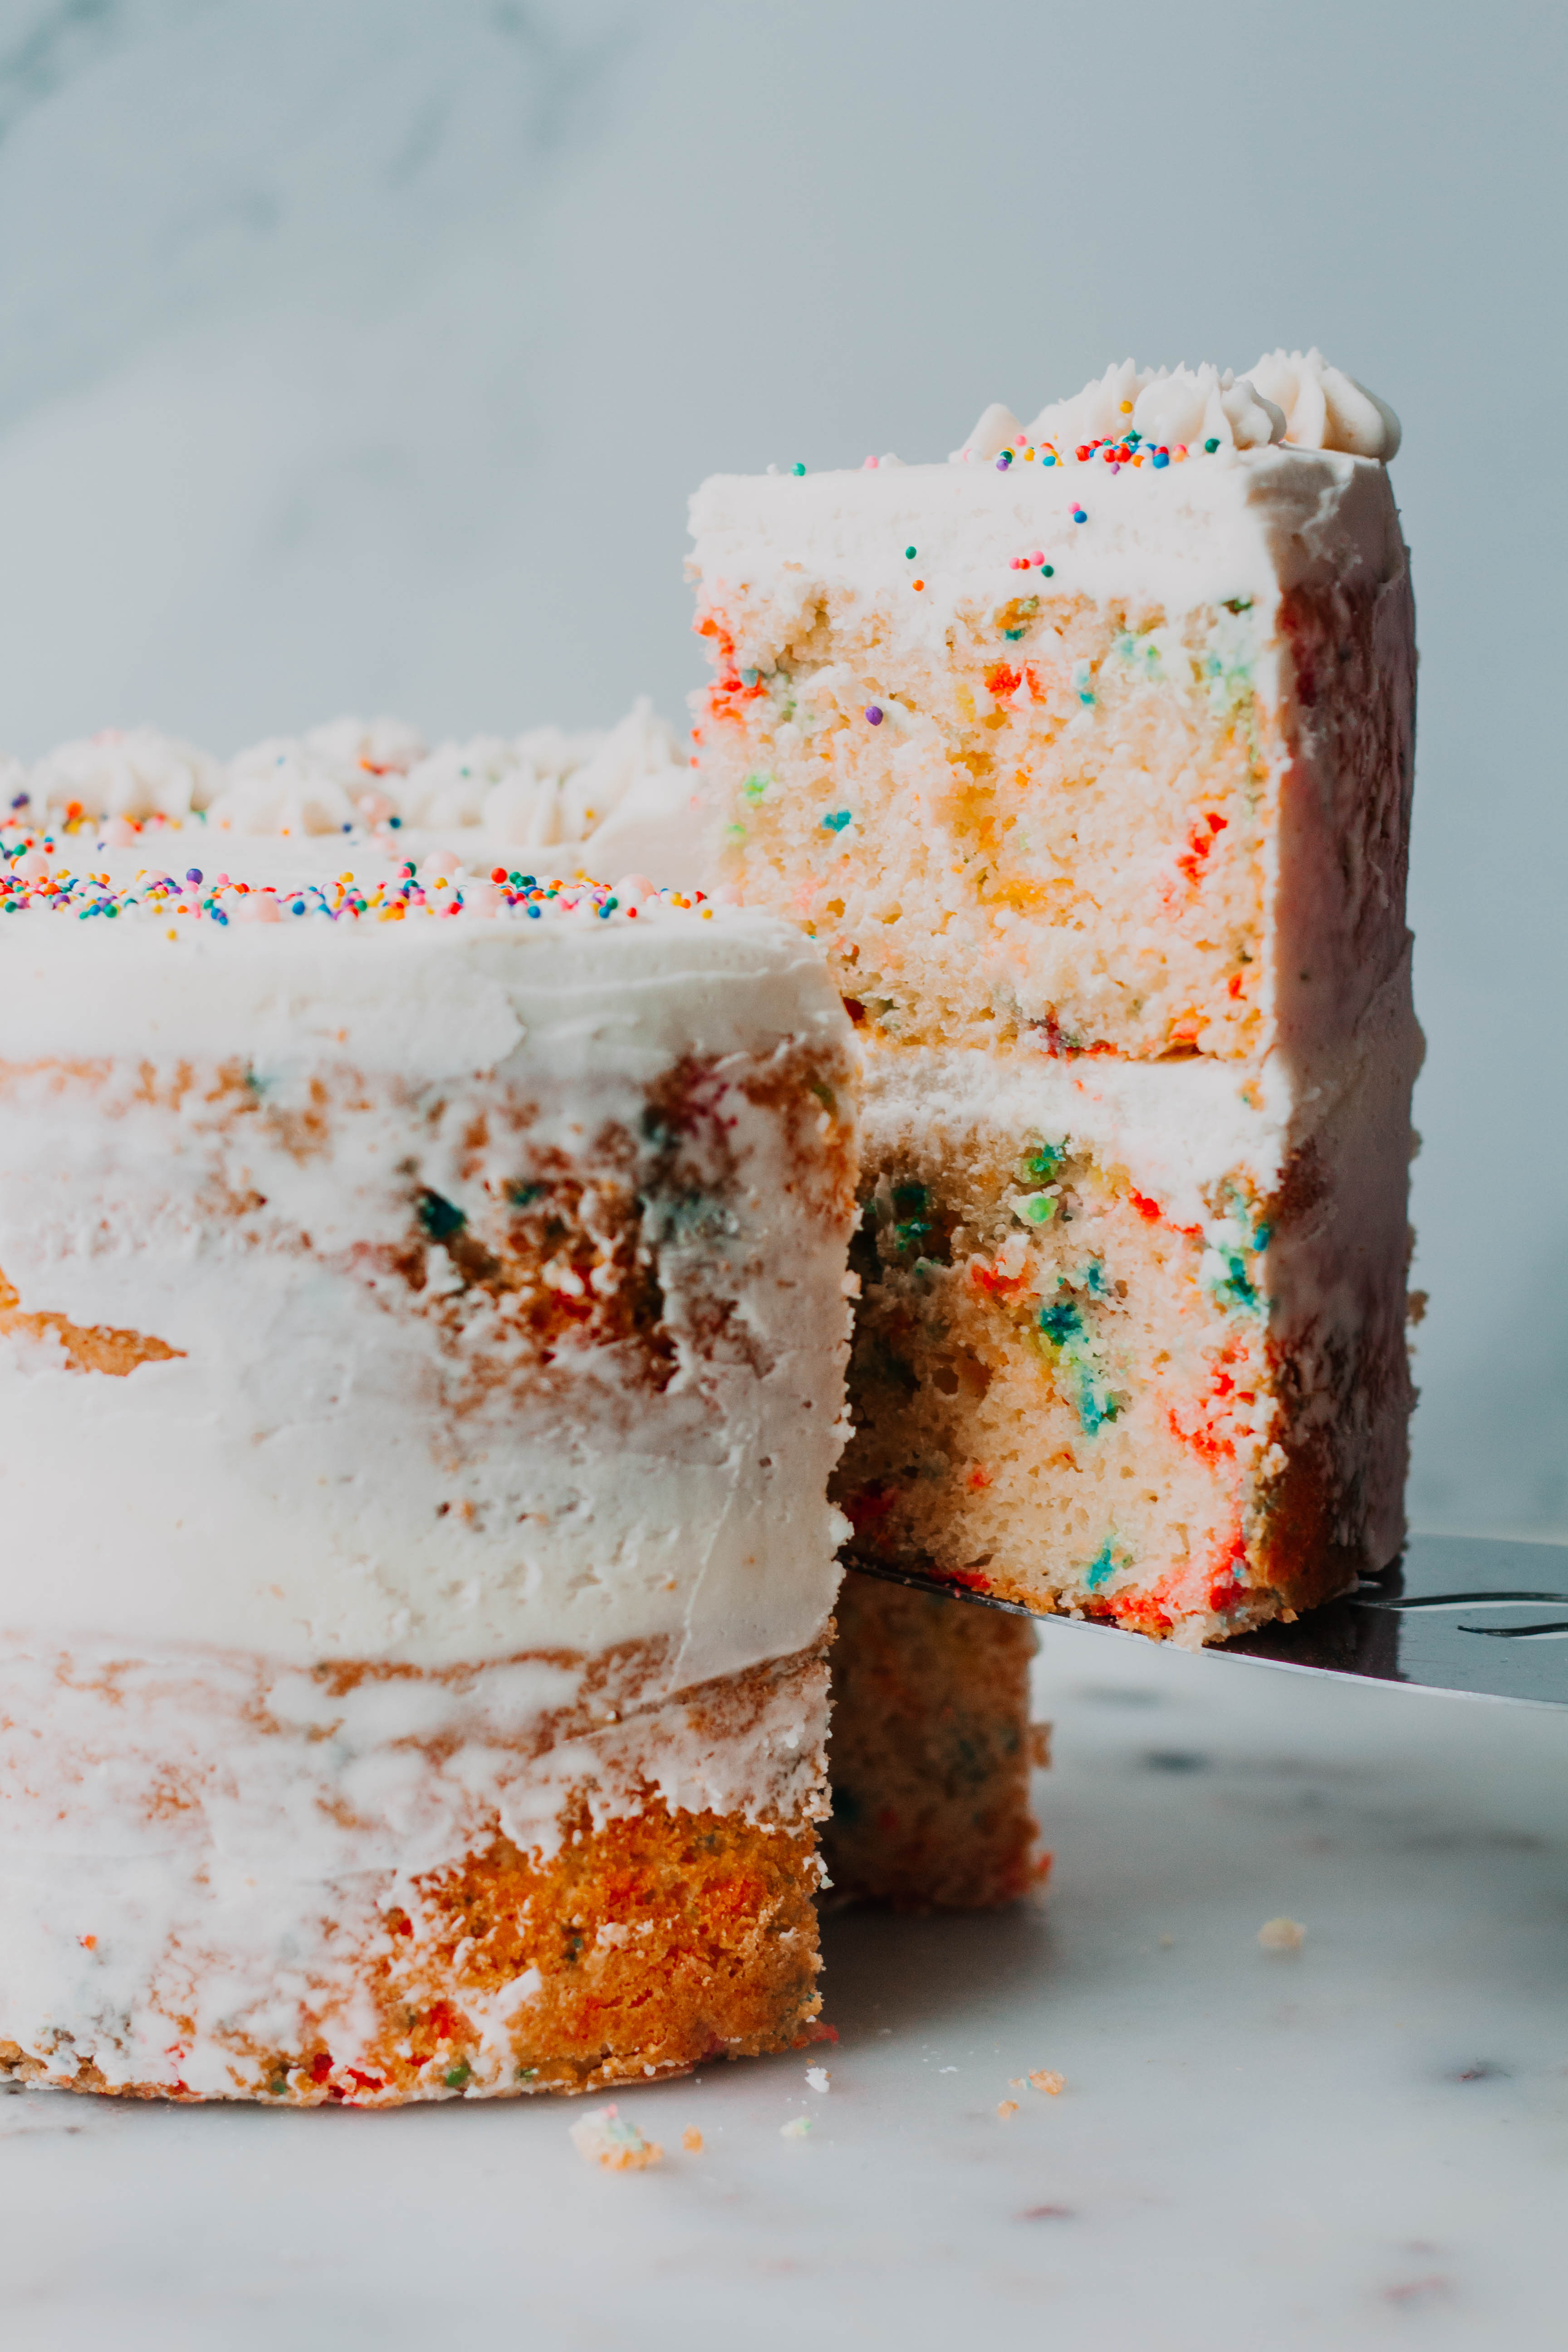 Funfetti Bundt Cake (A Doctored Cake Mix Recipe) - I Scream for